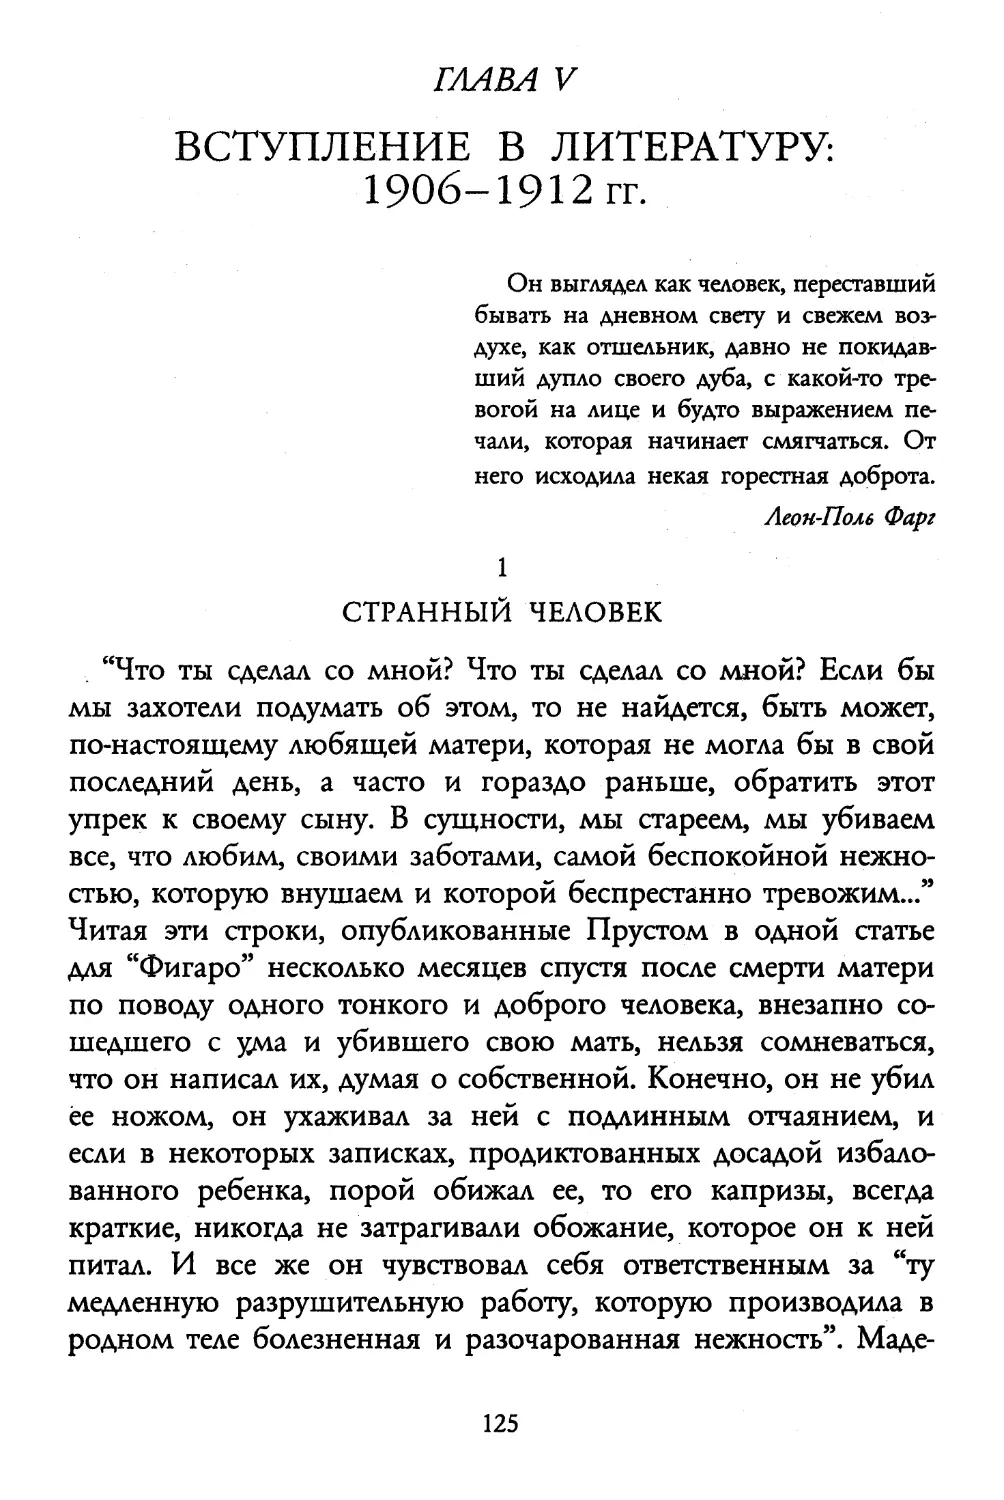 Глава V. Вступление в литературу: 1906-1912 гг.